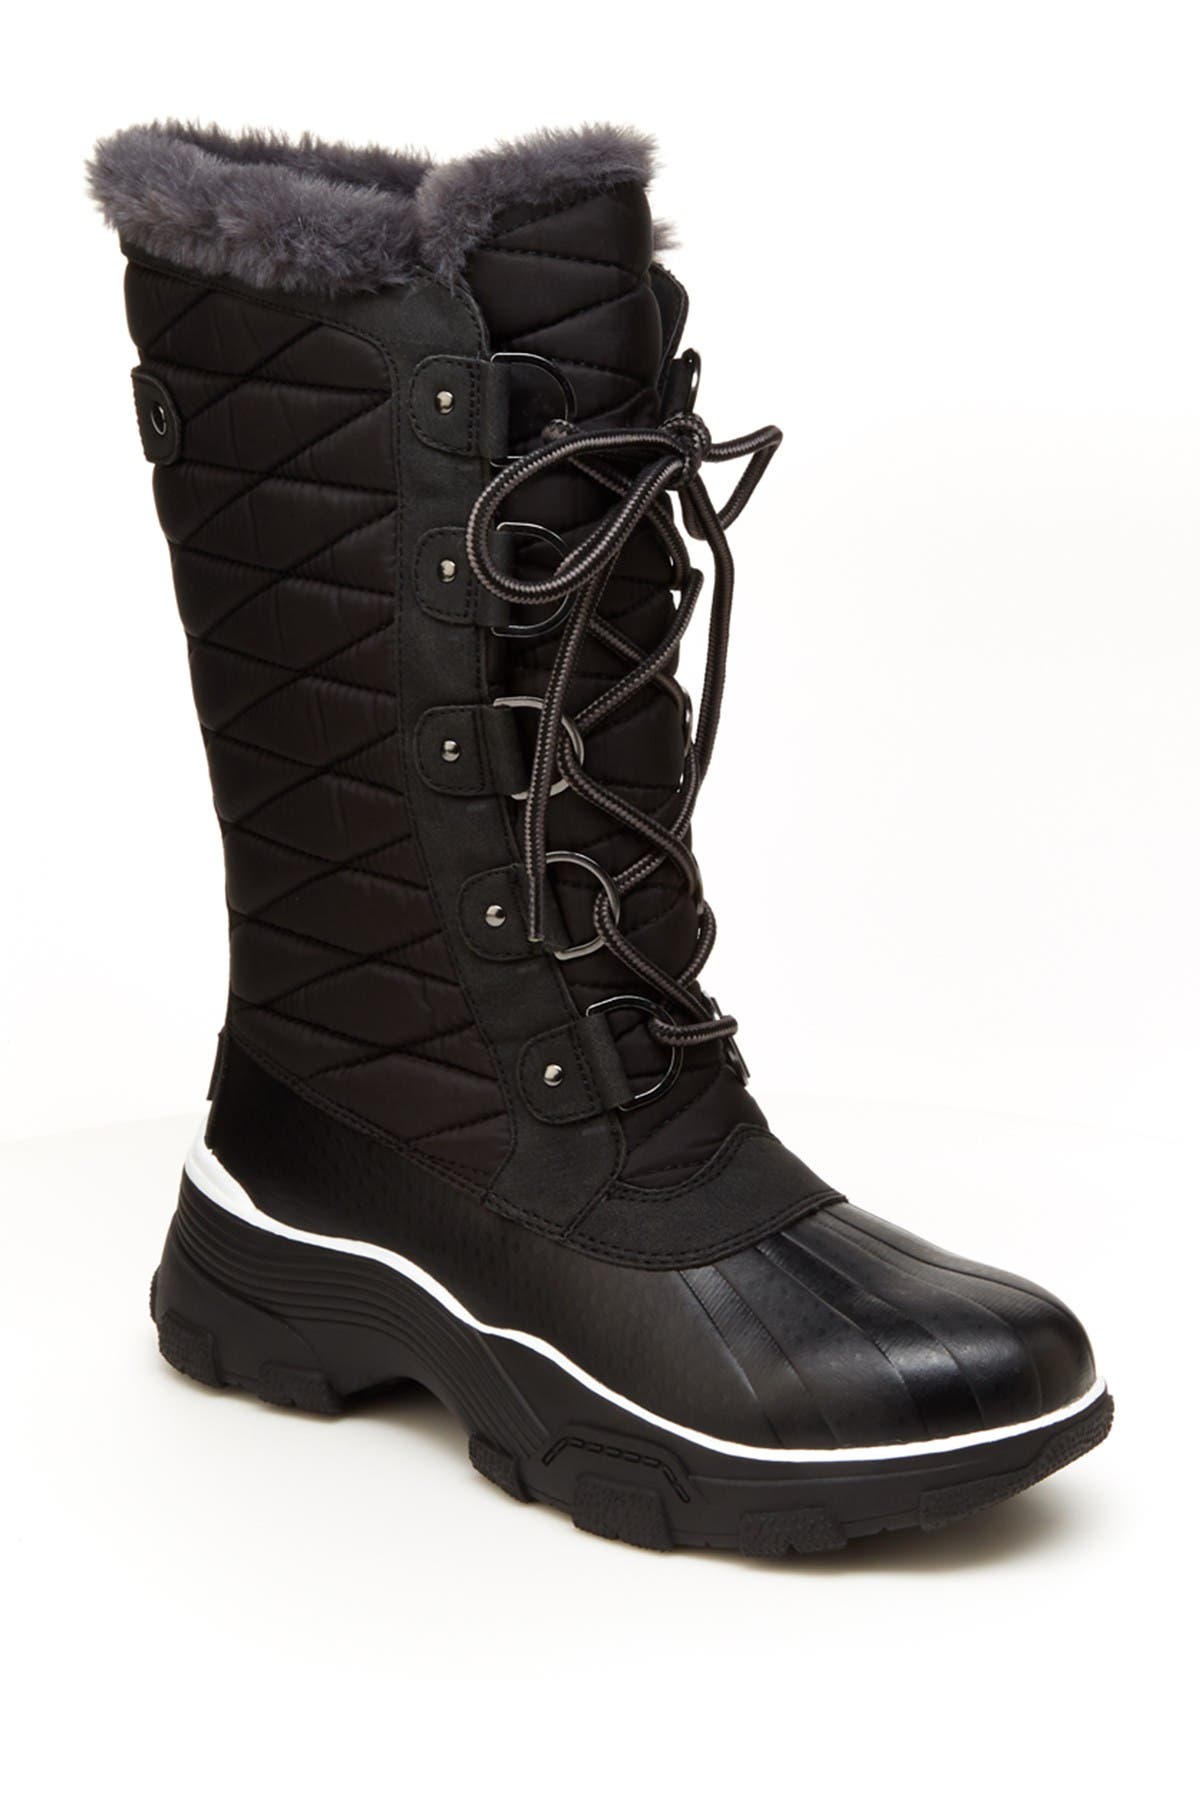 jambu waterproof boots